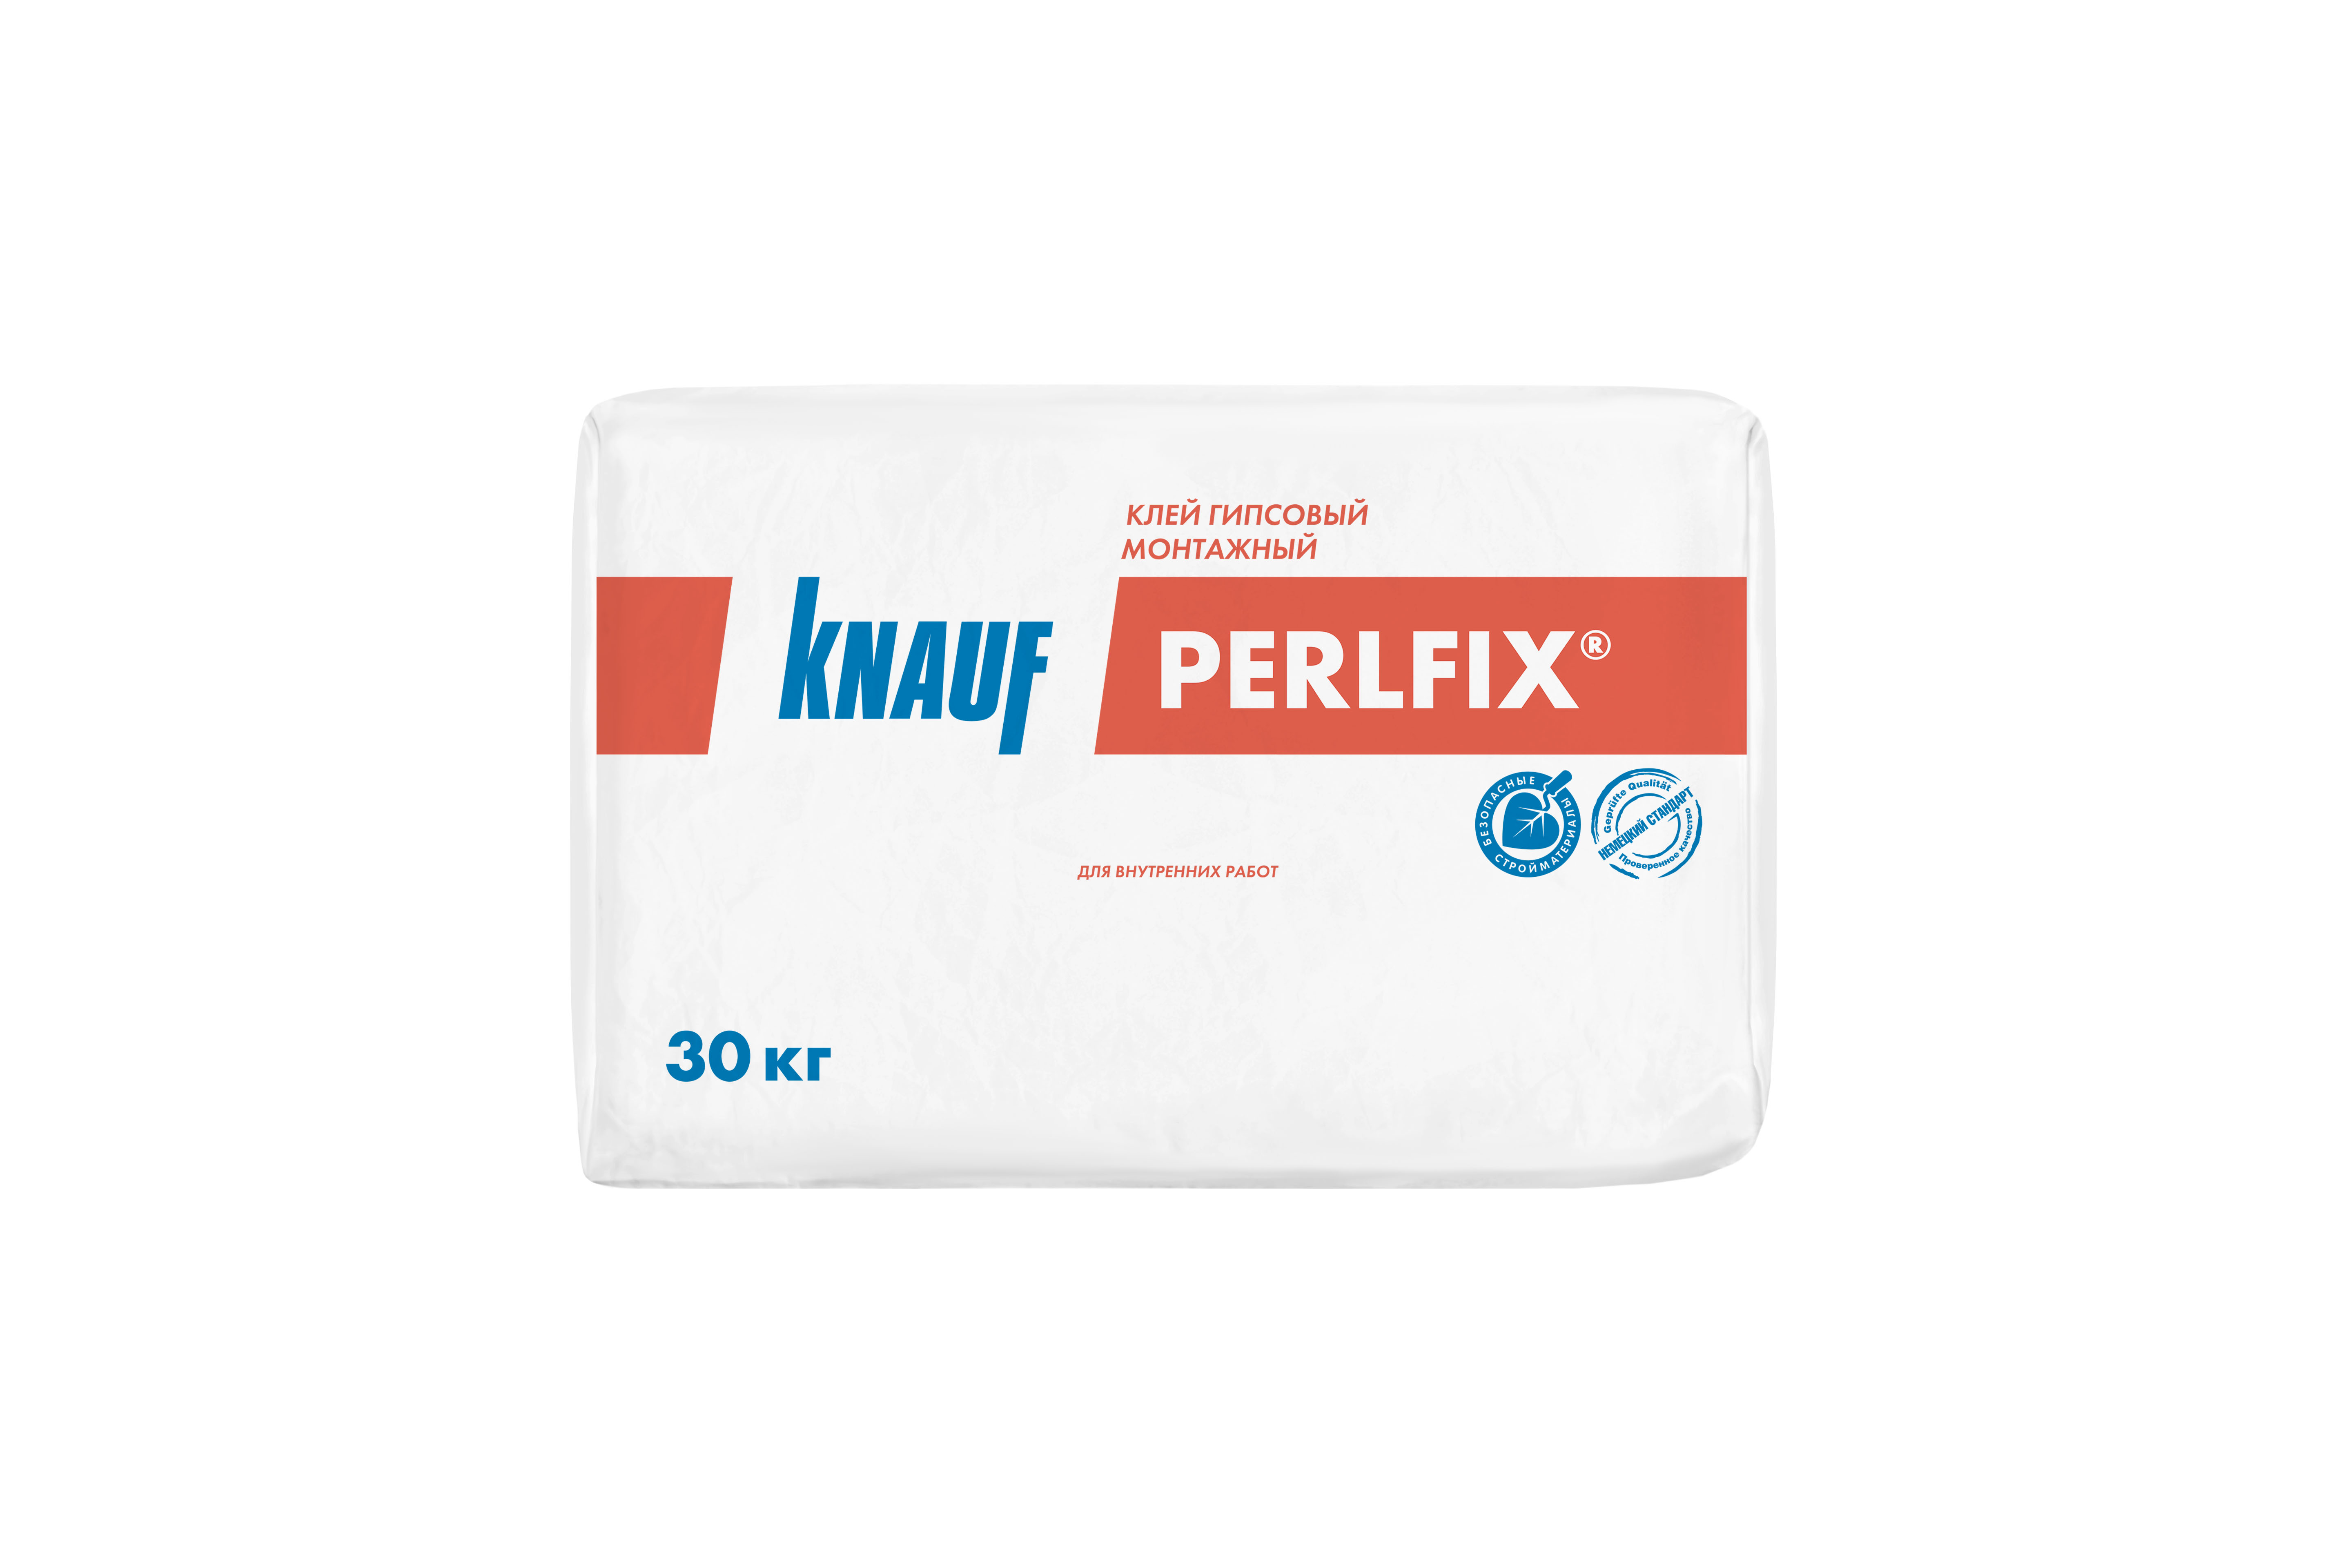 КНАУФ-Перлфикс клей монтажный гипсовый 30кг (40)